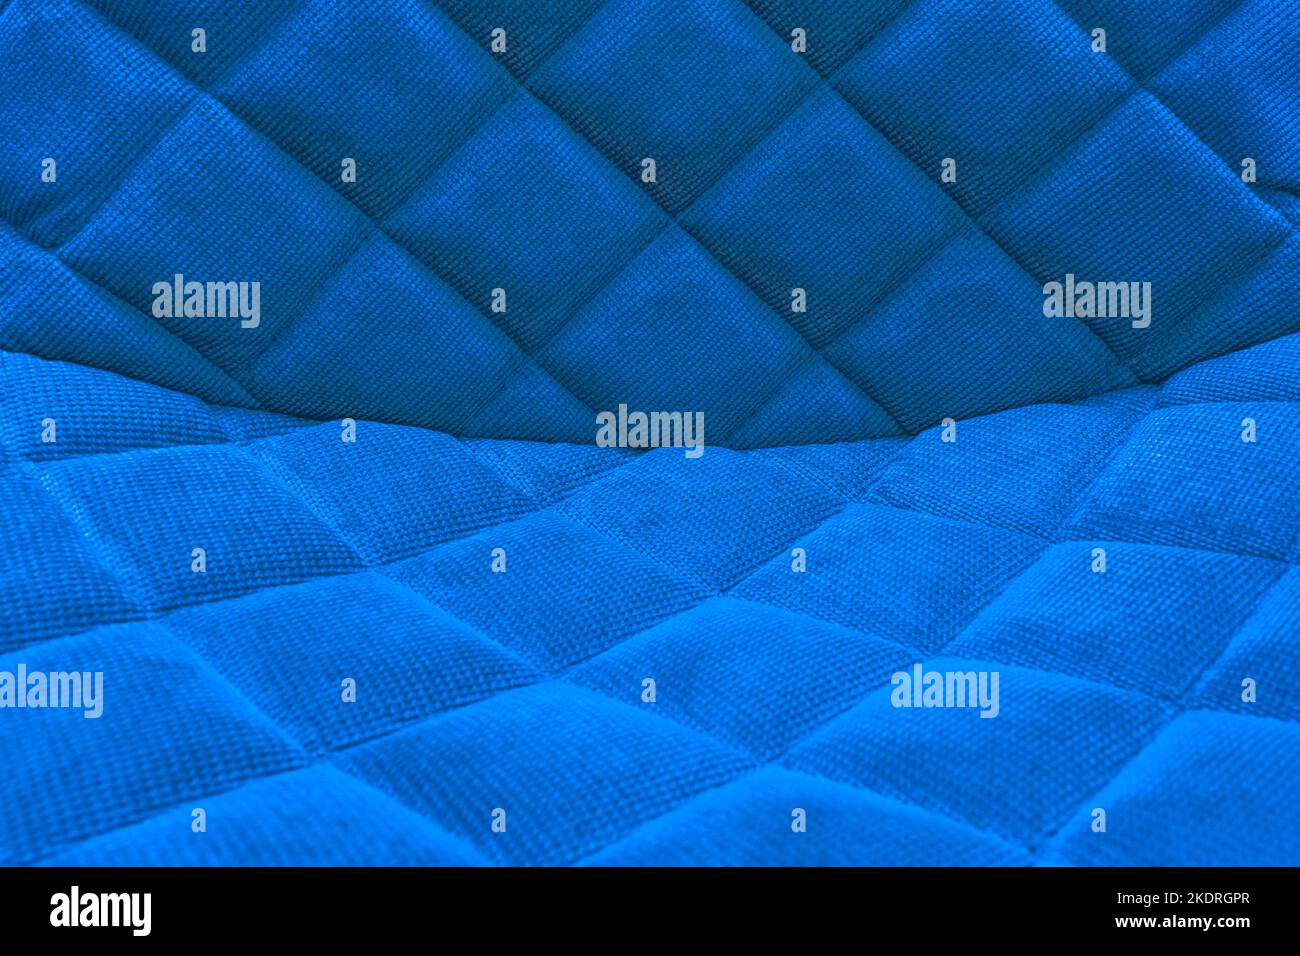 Sedia in pelle blu immagini e fotografie stock ad alta risoluzione - Alamy